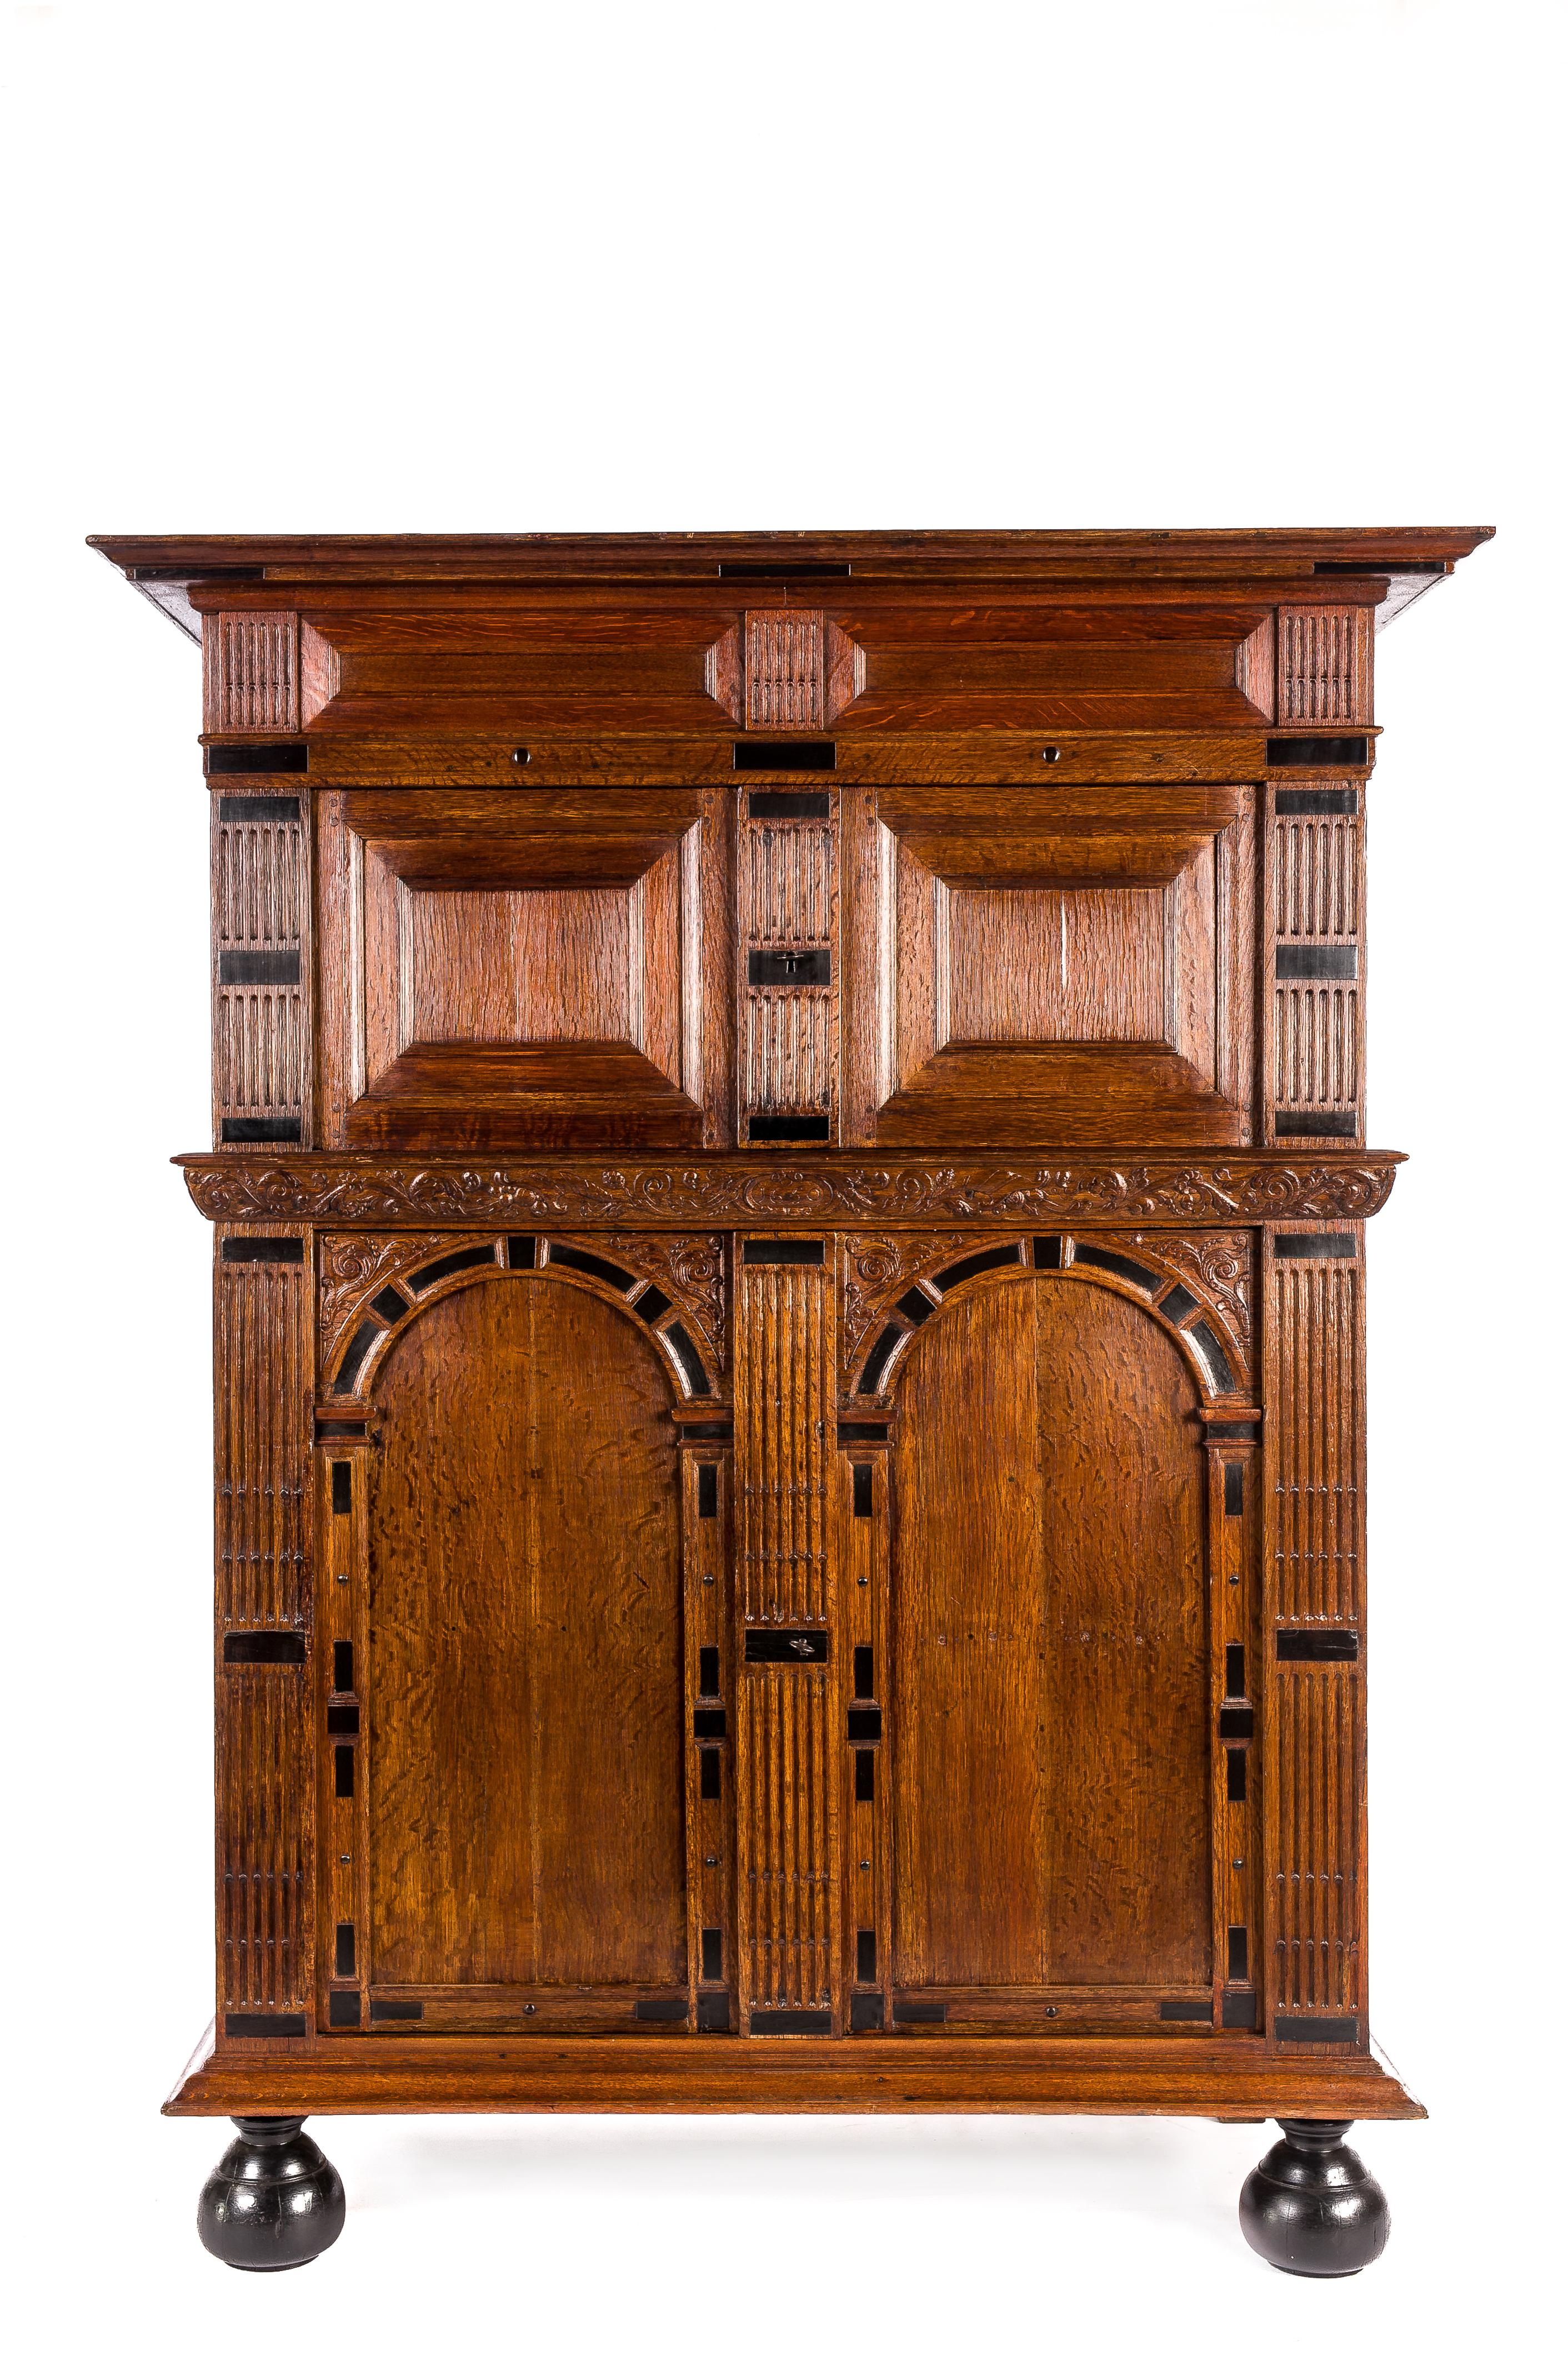 Cette armoire extraordinaire est fabriquée dans le plus beau chêne arrosé, dans la tradition de la Renaissance hollandaise pendant l'